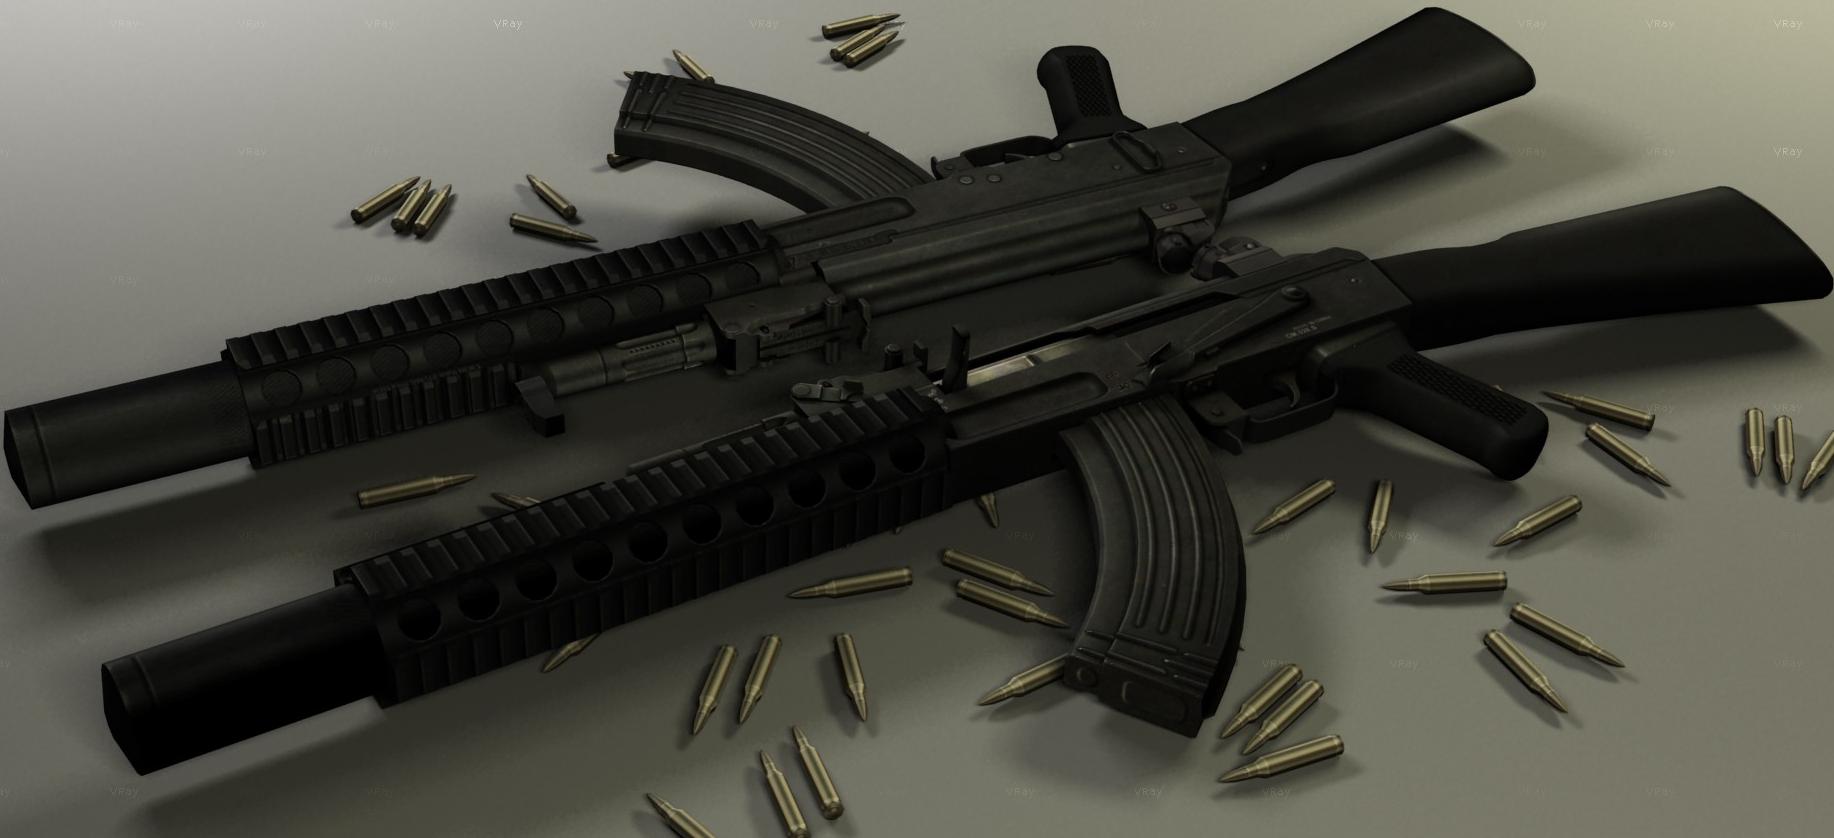 AK-47 Schalldämpfer on IIopns